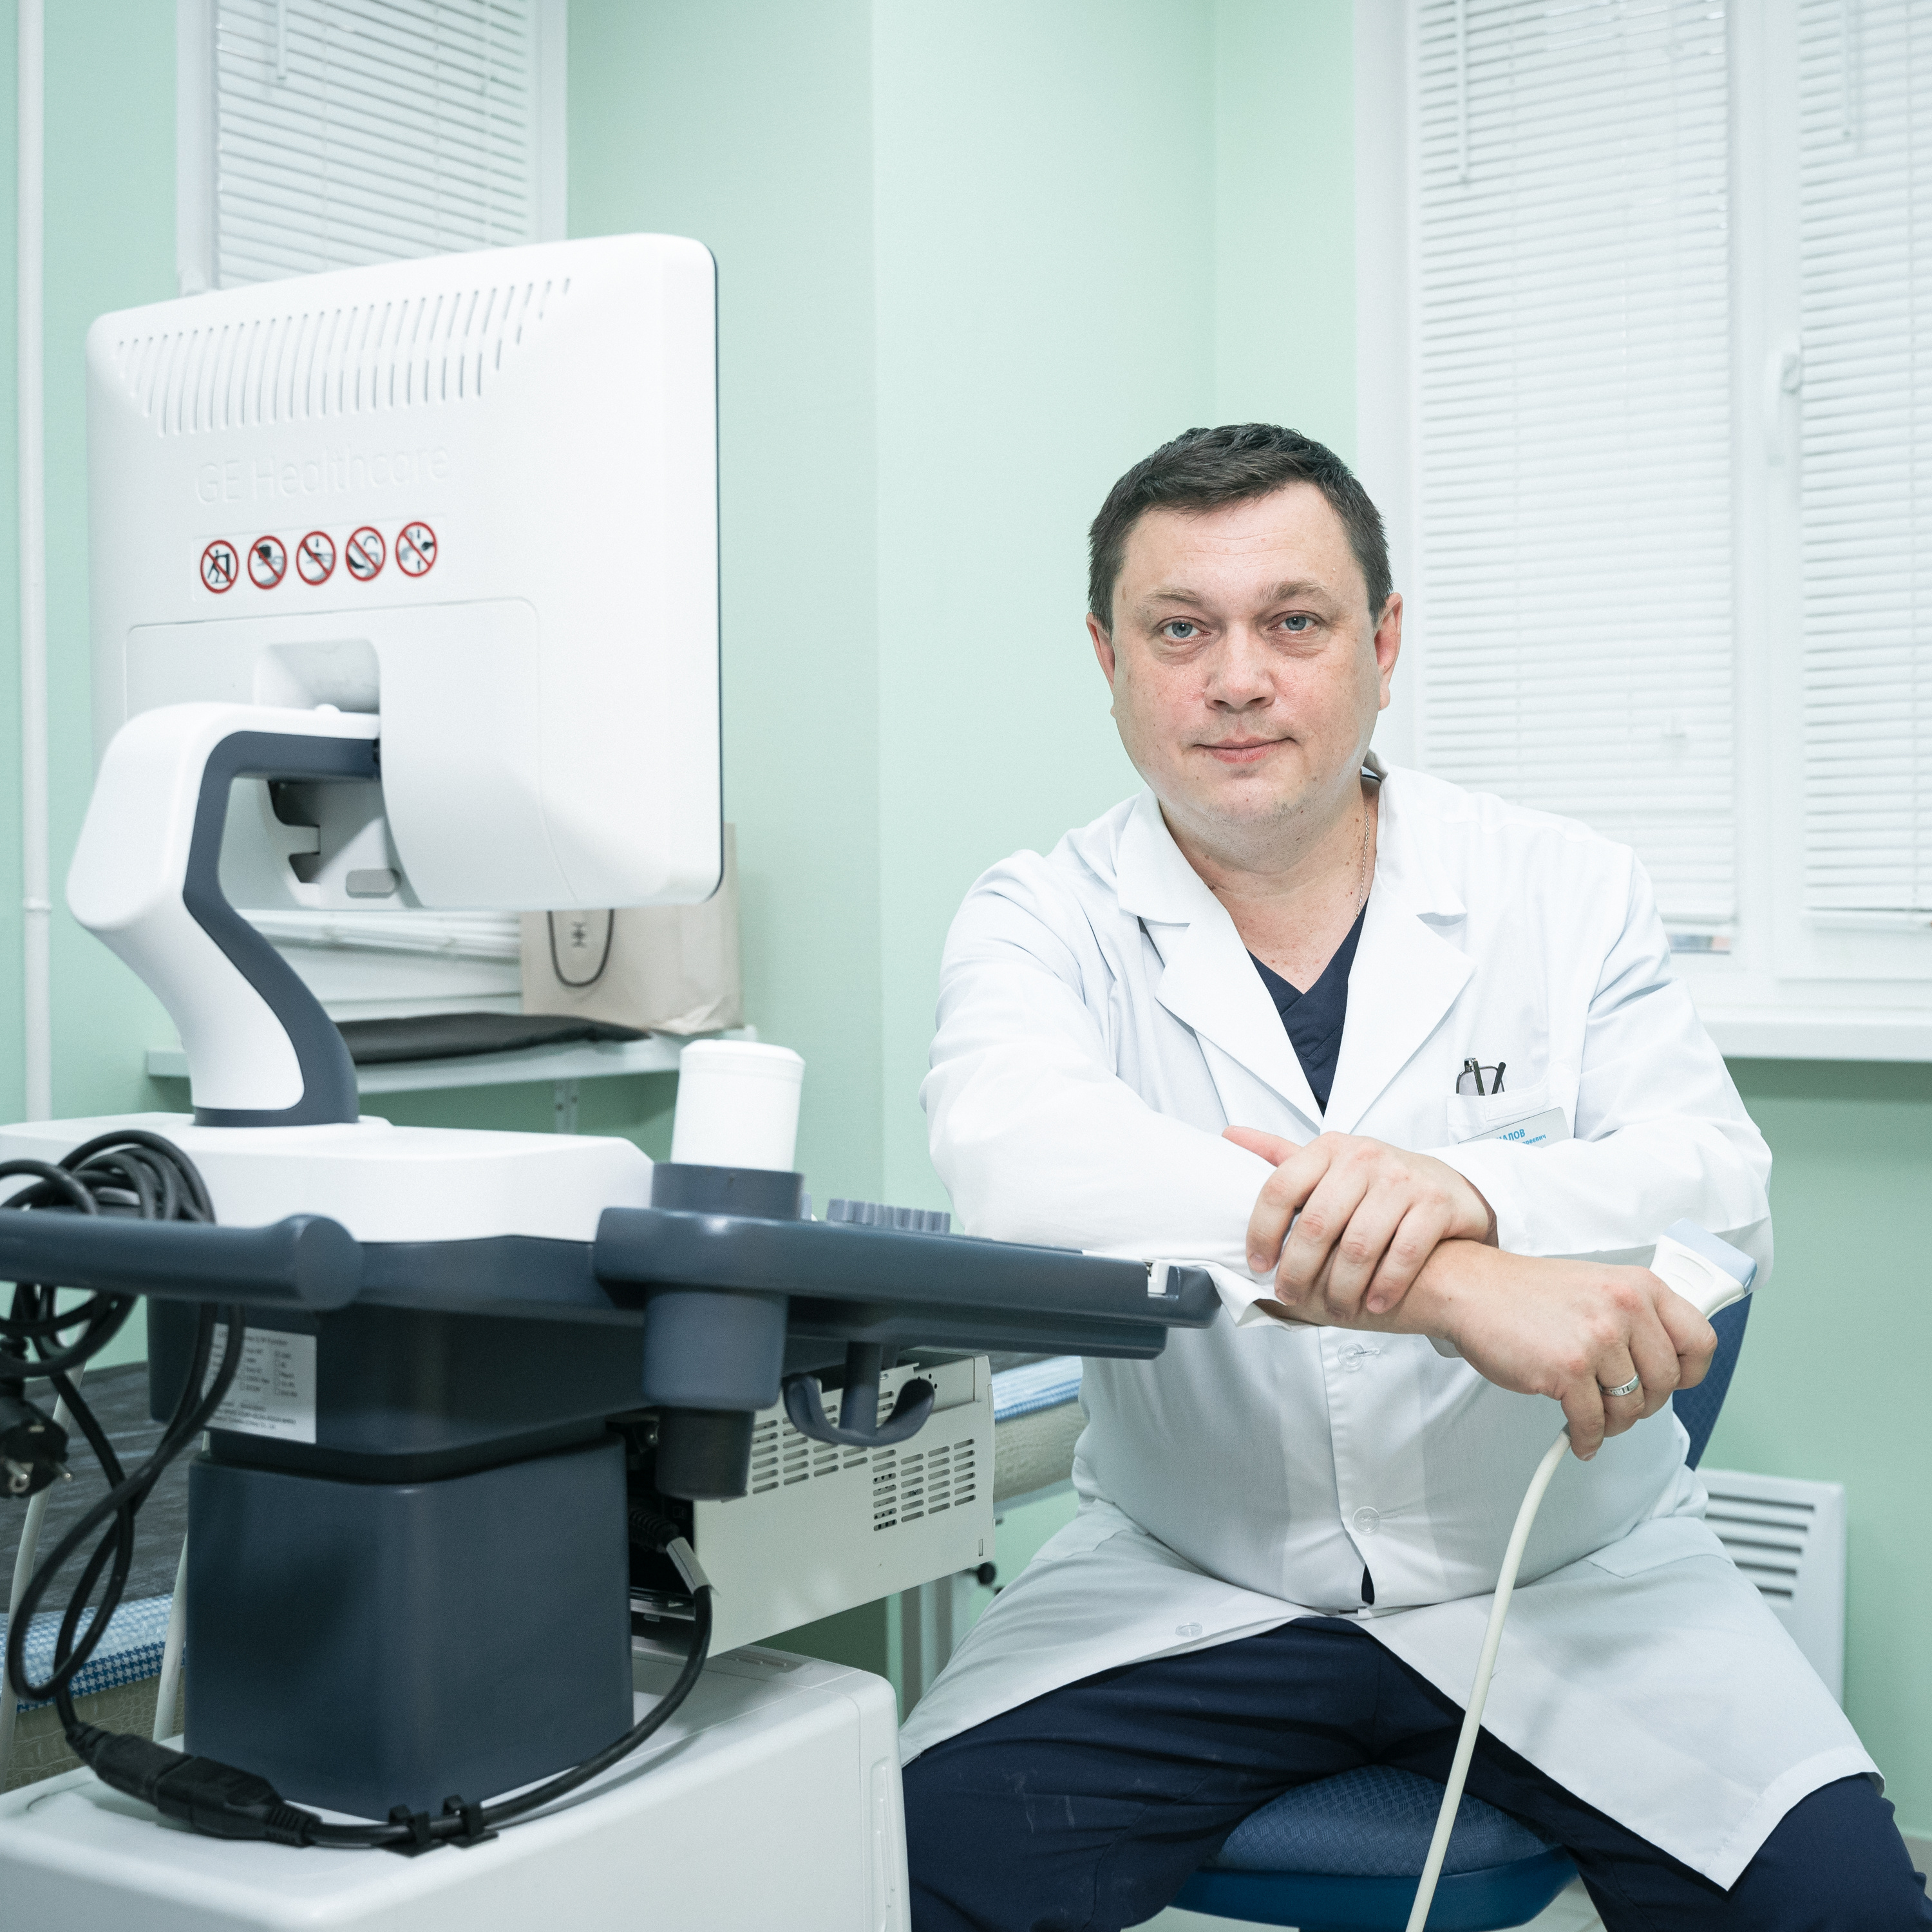 Сосудистый хирург Николай Чучалов обладает огромным опытом хирургического лечения варикозного расширения вен, в том числе сложных случаев